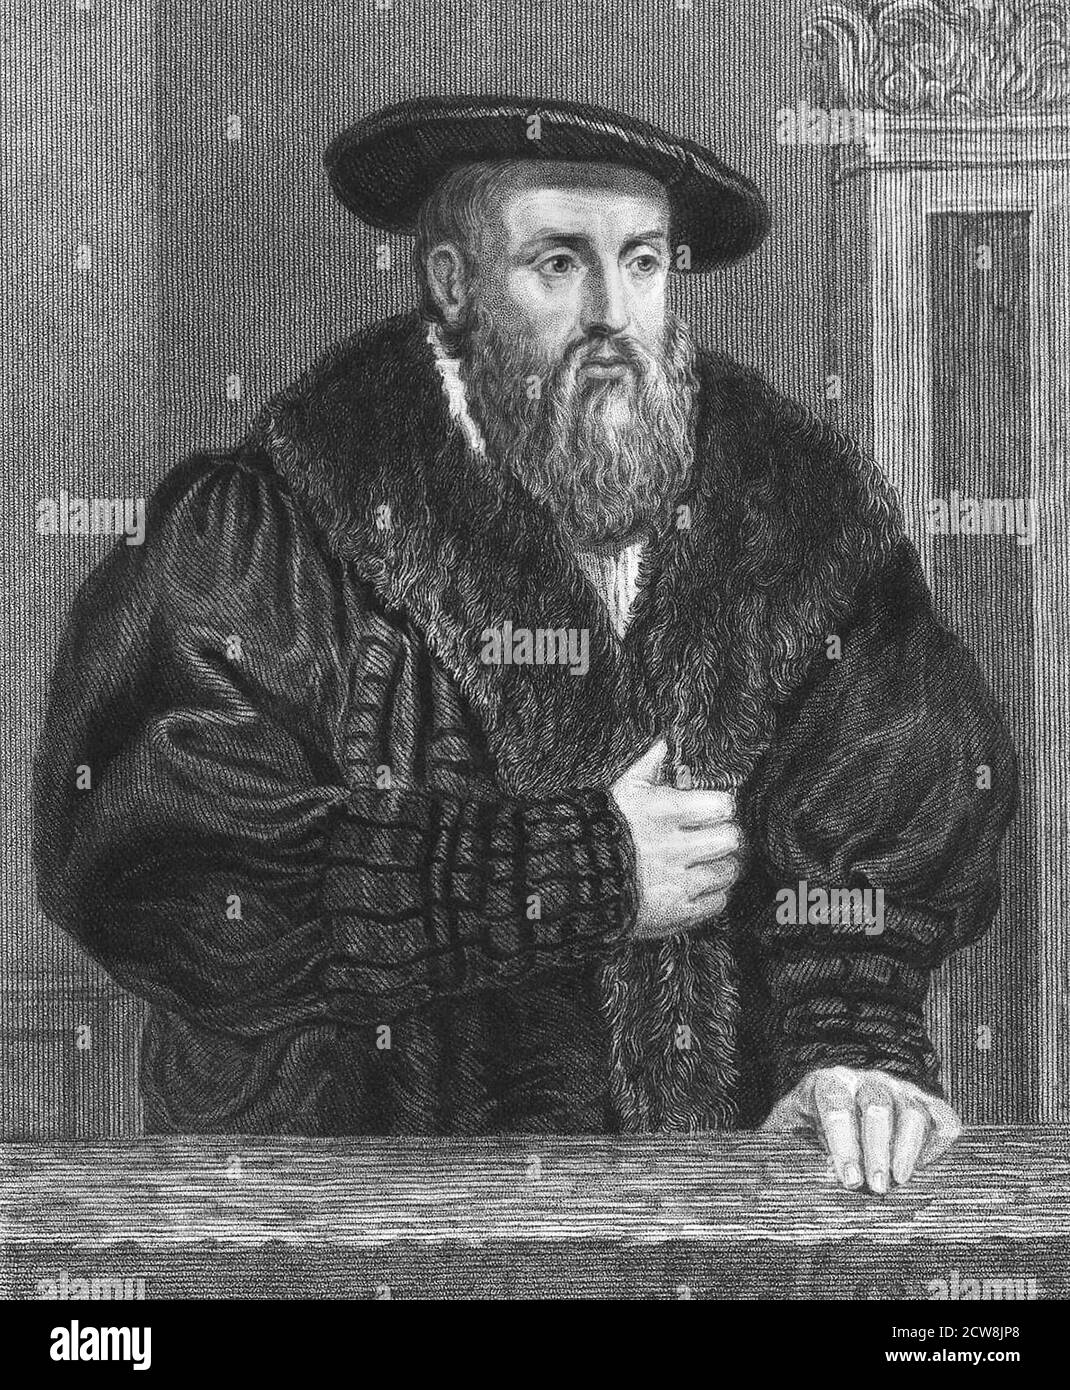 Portrait de l'astronome allemand Johannes Kepler (1571-1630), gravure du XIXe siècle Banque D'Images